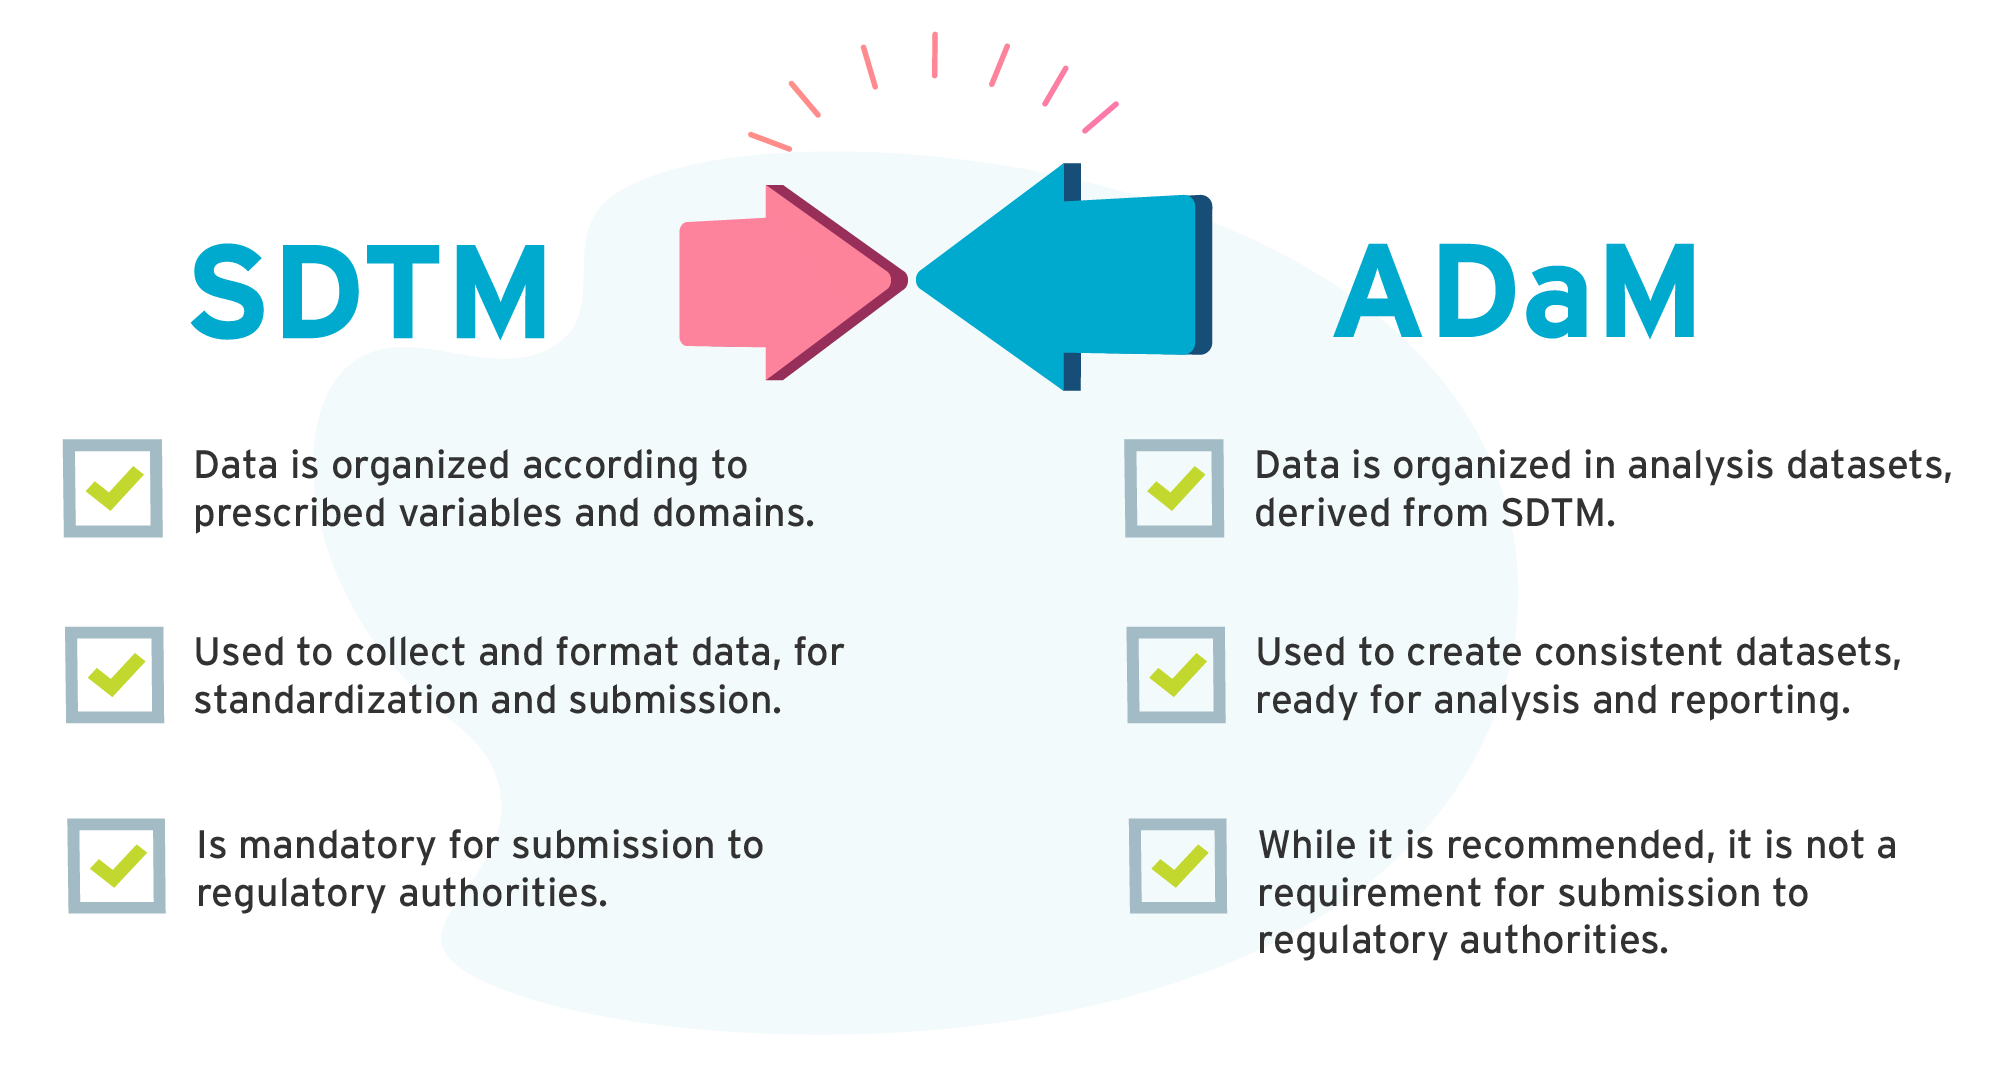 SDTM vs ADaM infographic